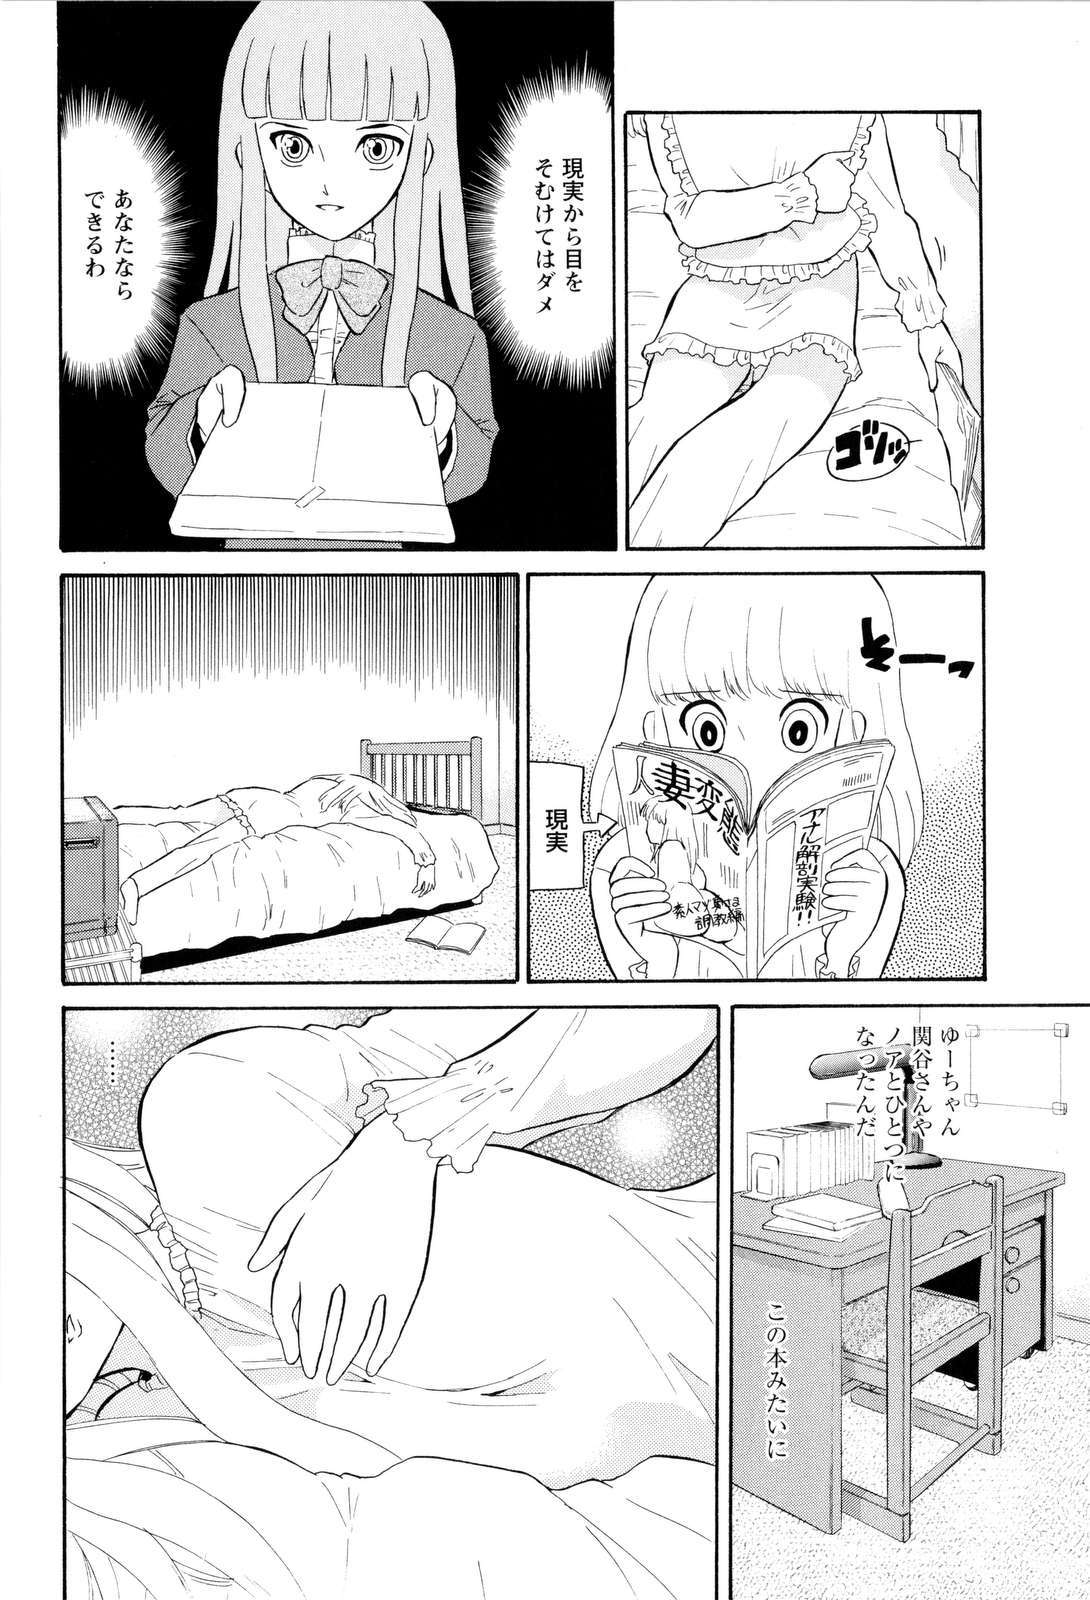 [Dozamura] Haruka 69 Vol.2 page 9 full